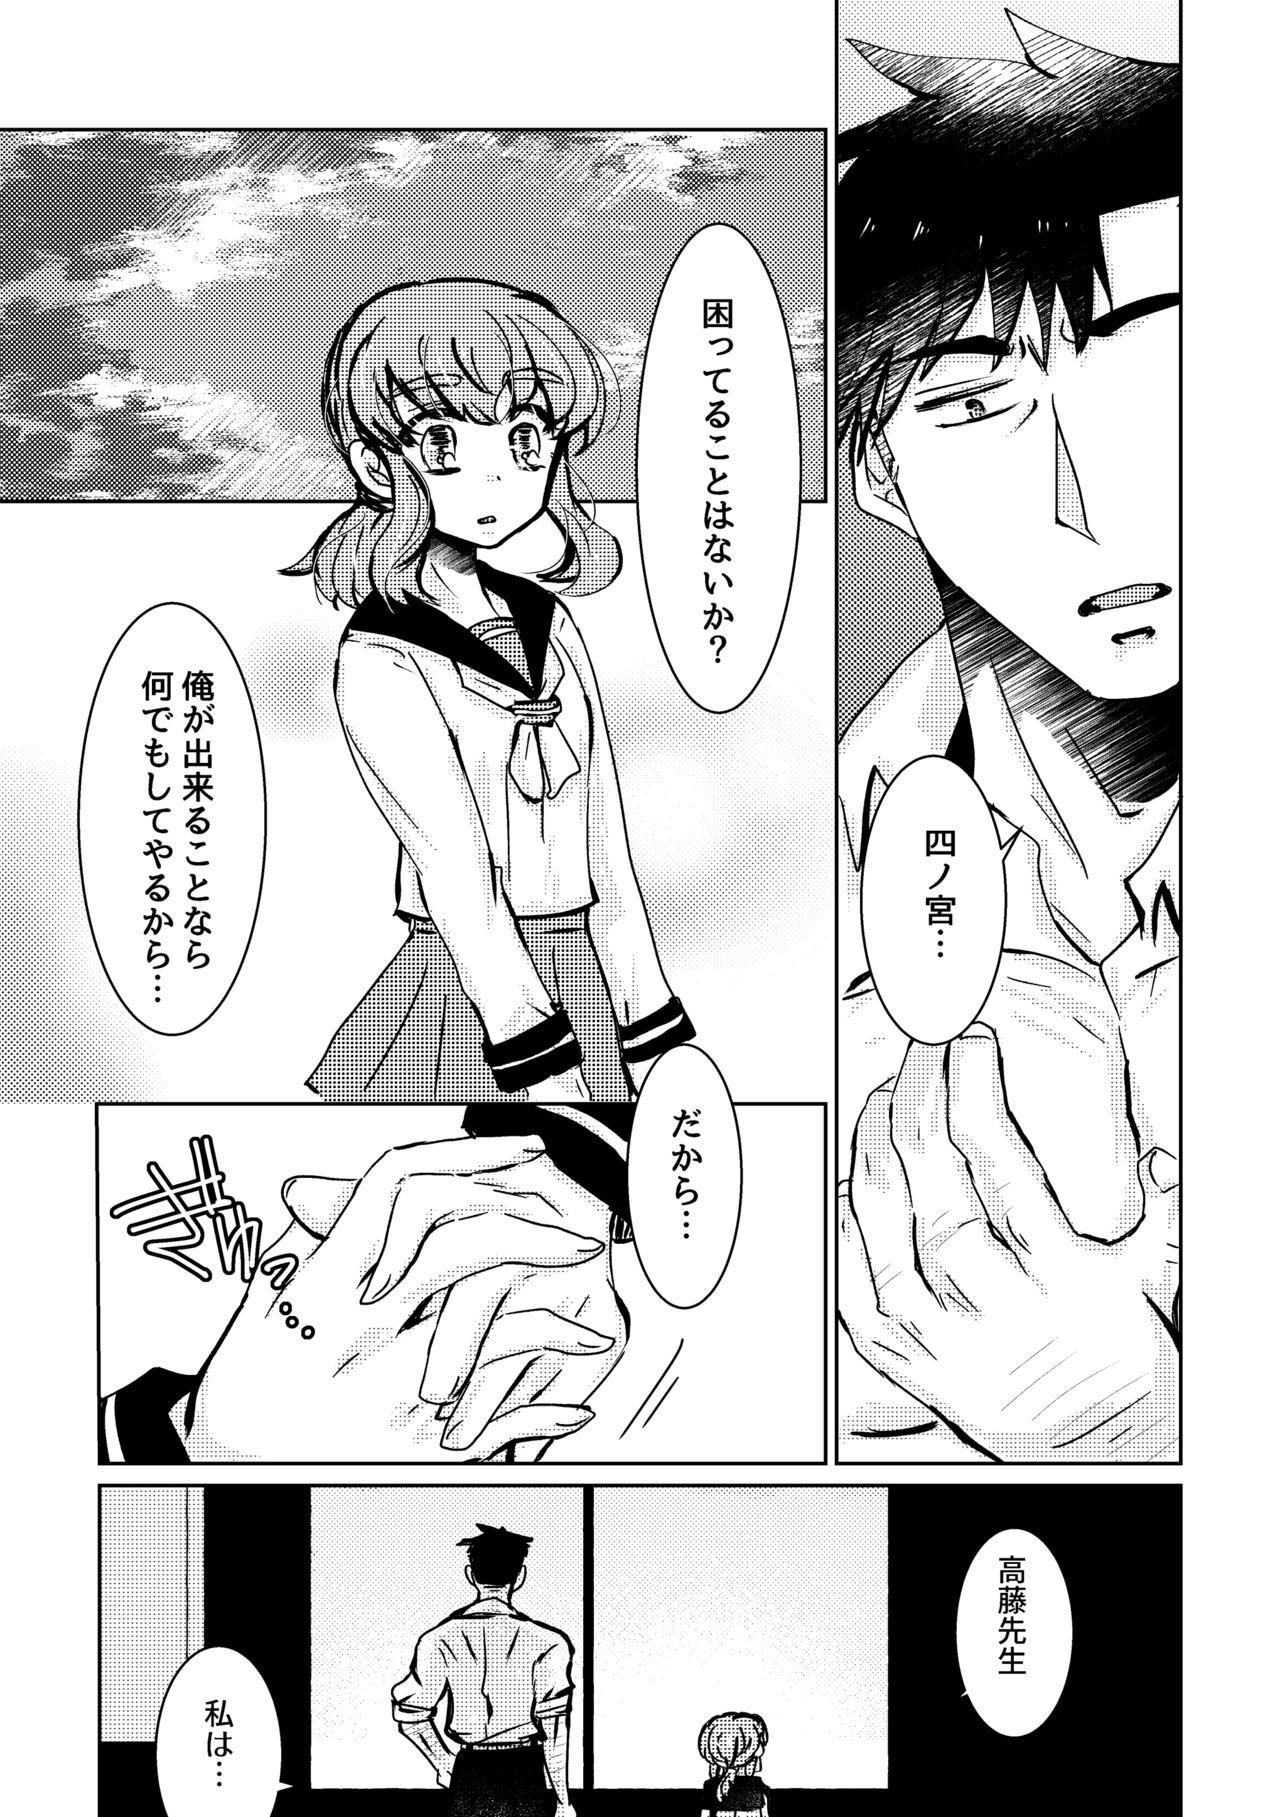 Naija Kareya Yoru no Hanaka Episode 3 Stroking - Page 11